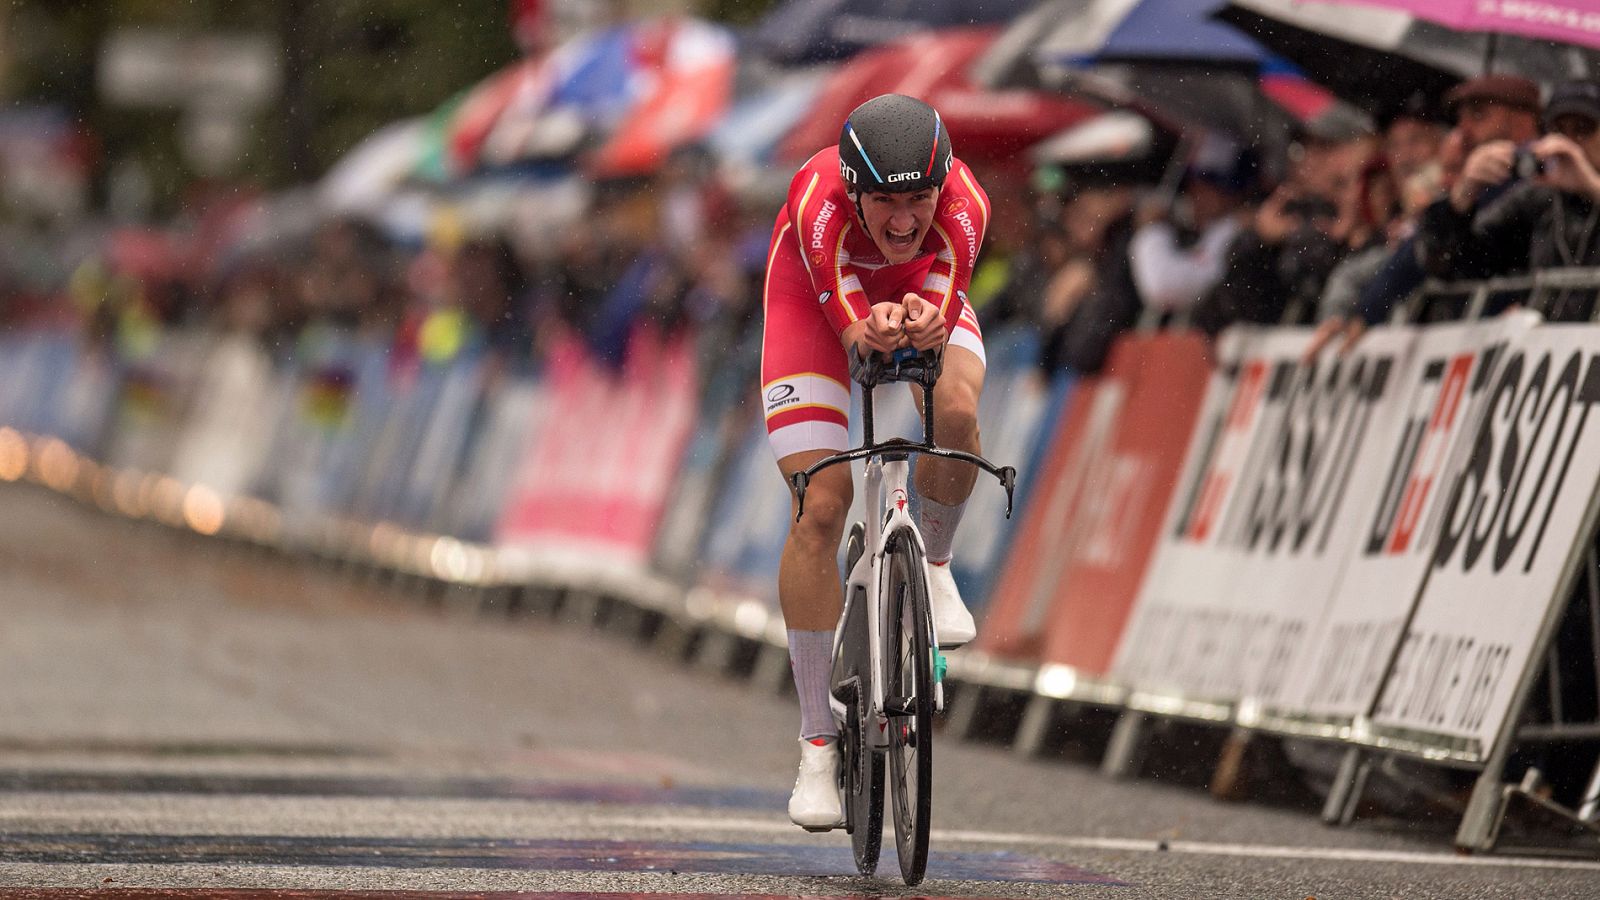 El danés Mikkel Bjerg ha ganado la contrarreloj individual sub-23 del Mundial de ciclismo de Yorkshire 2019 en un día donde la lluvia ha hecho estragos y ha provocado más de una caída a lo largo del recorrido entre los participantes.